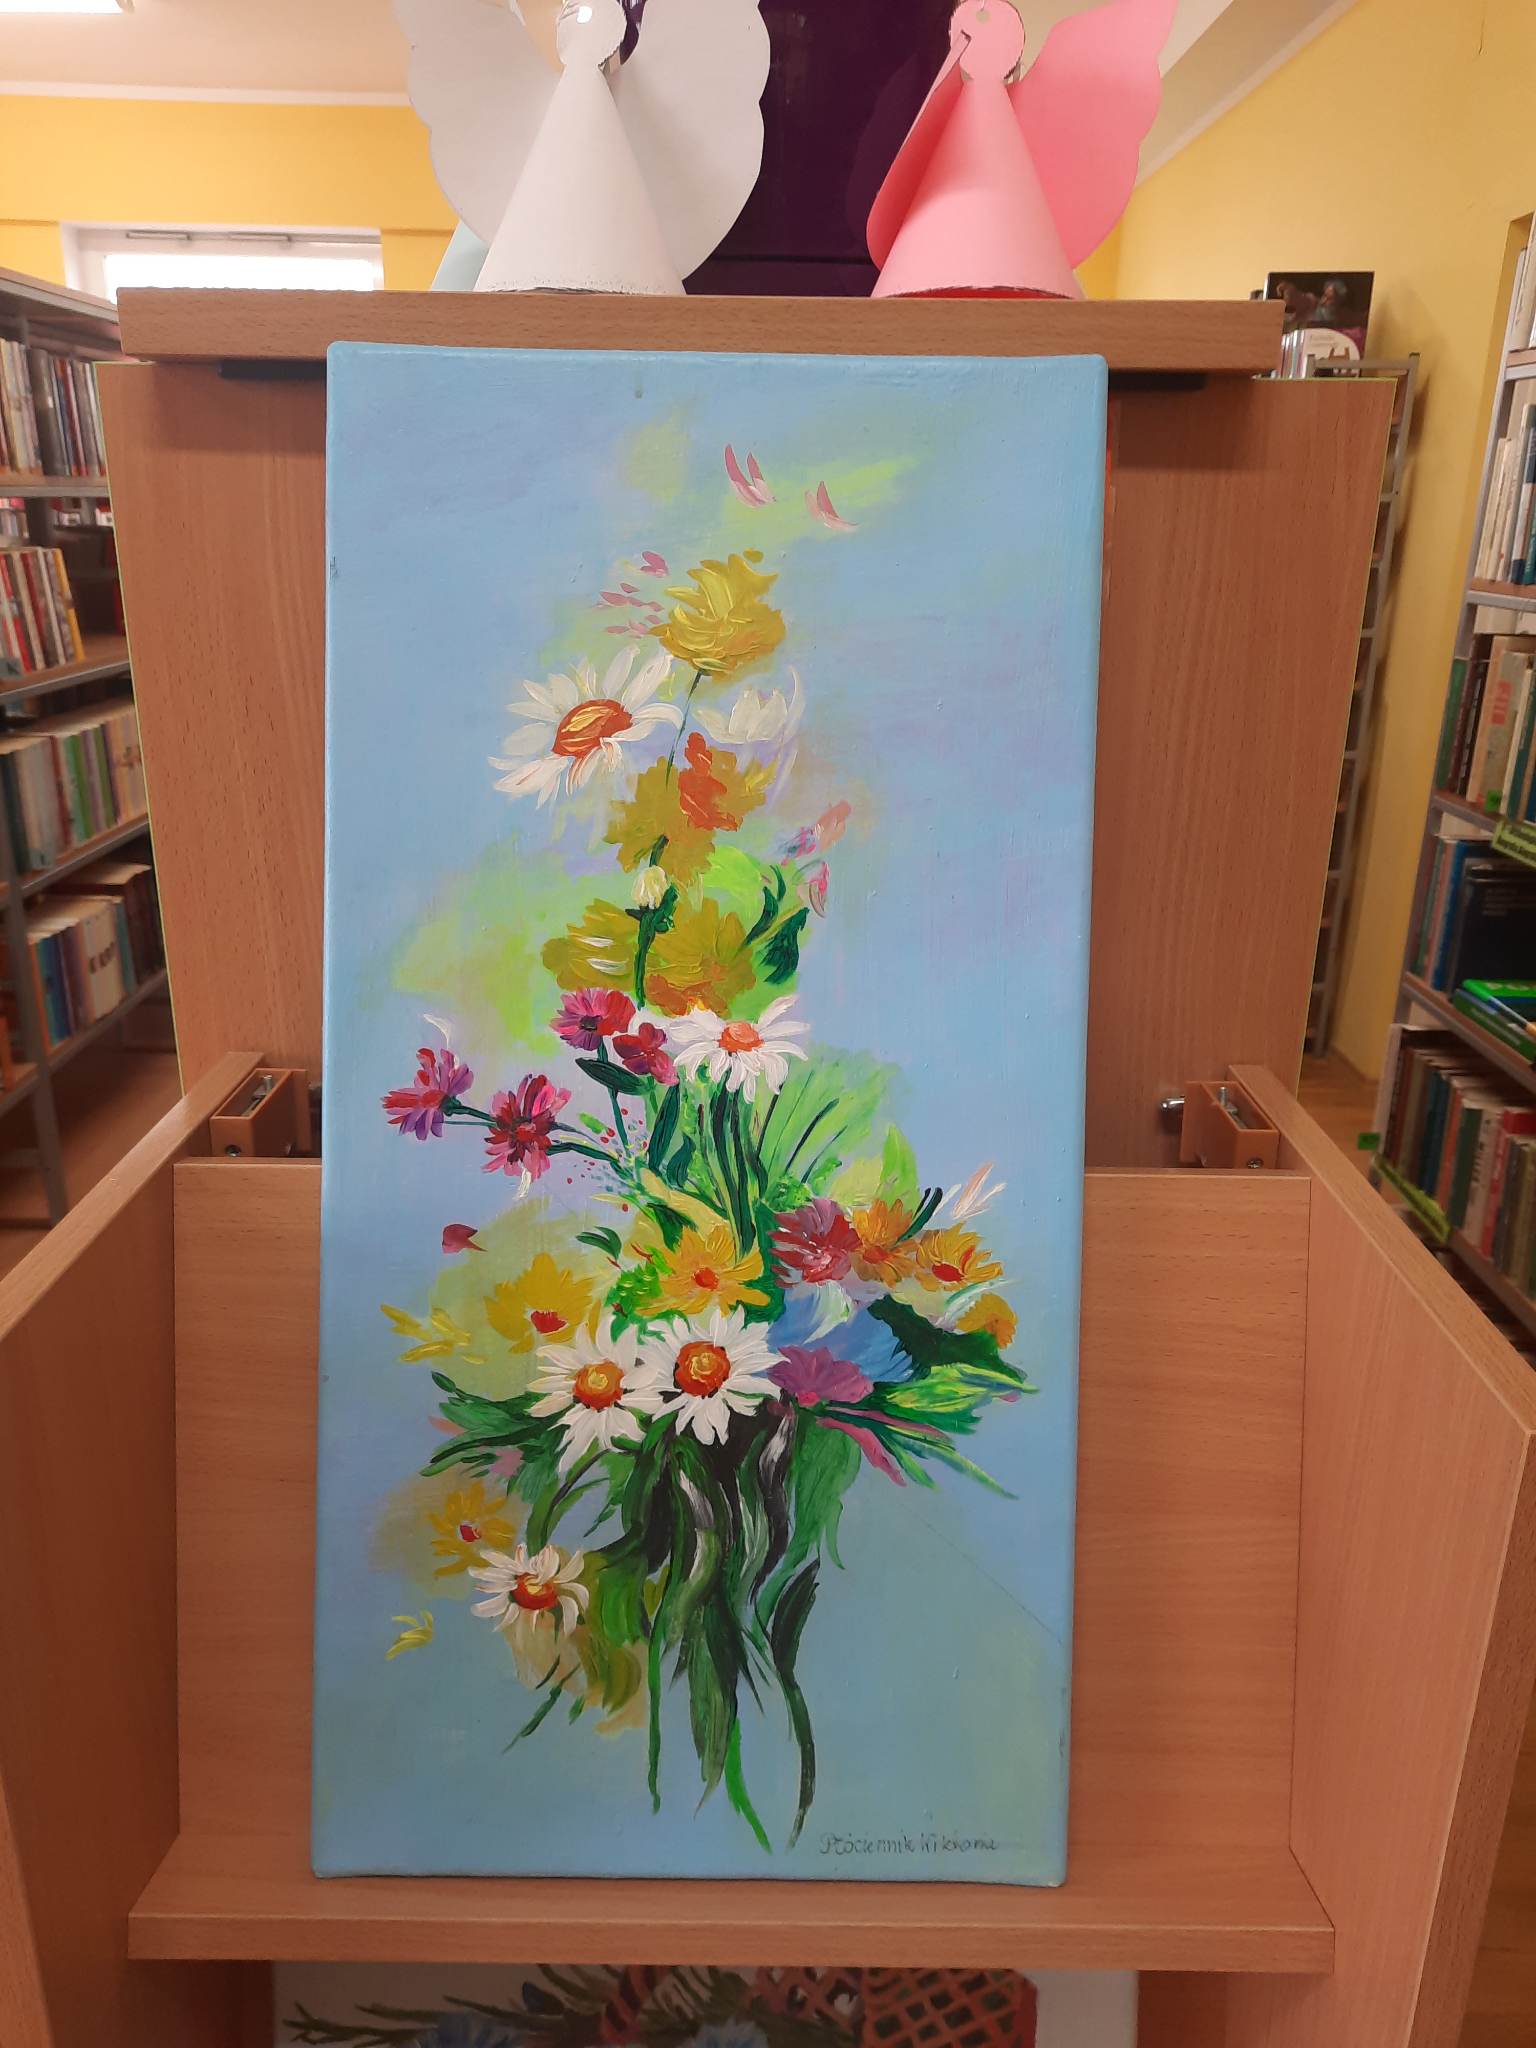 Obraz autorstwa pani Wiktorii Płóciennik przedstawiający kolorowy bukiet kwiatów na niebieskim tle